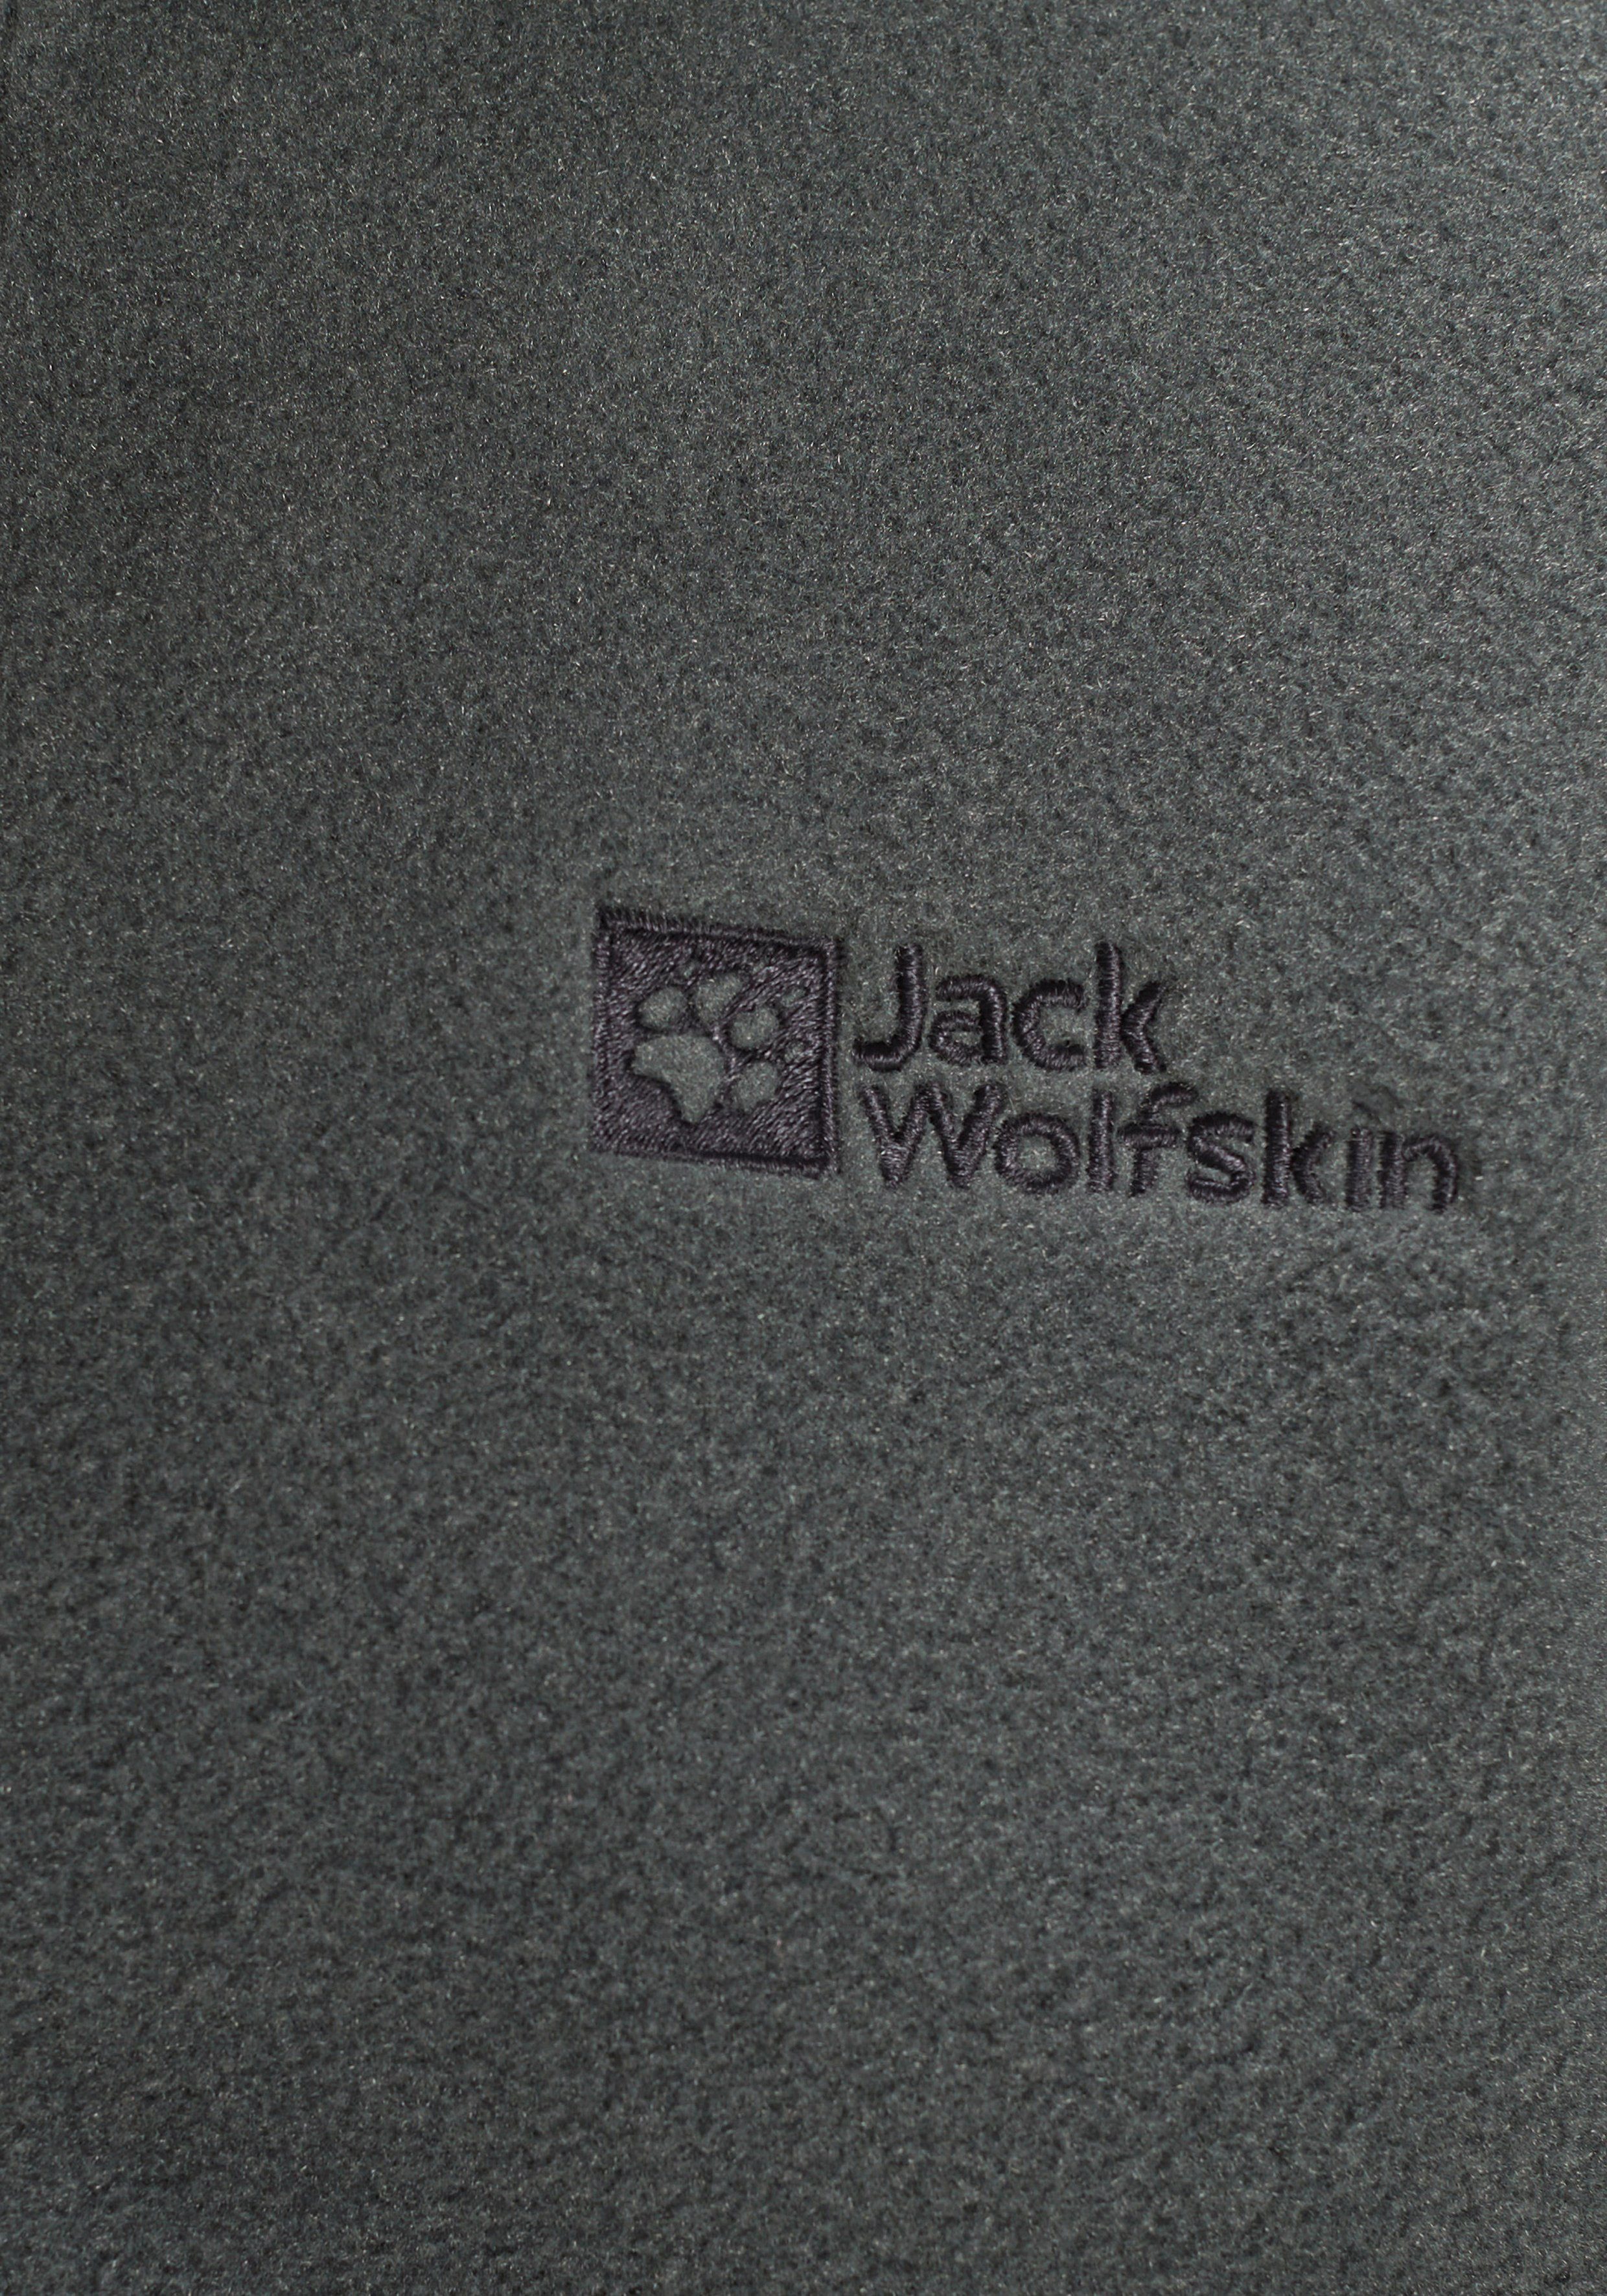 slate K Fleecejacke Recyclingmaterial Wolfskin green Jack aus JACKET WINTERSTEIN